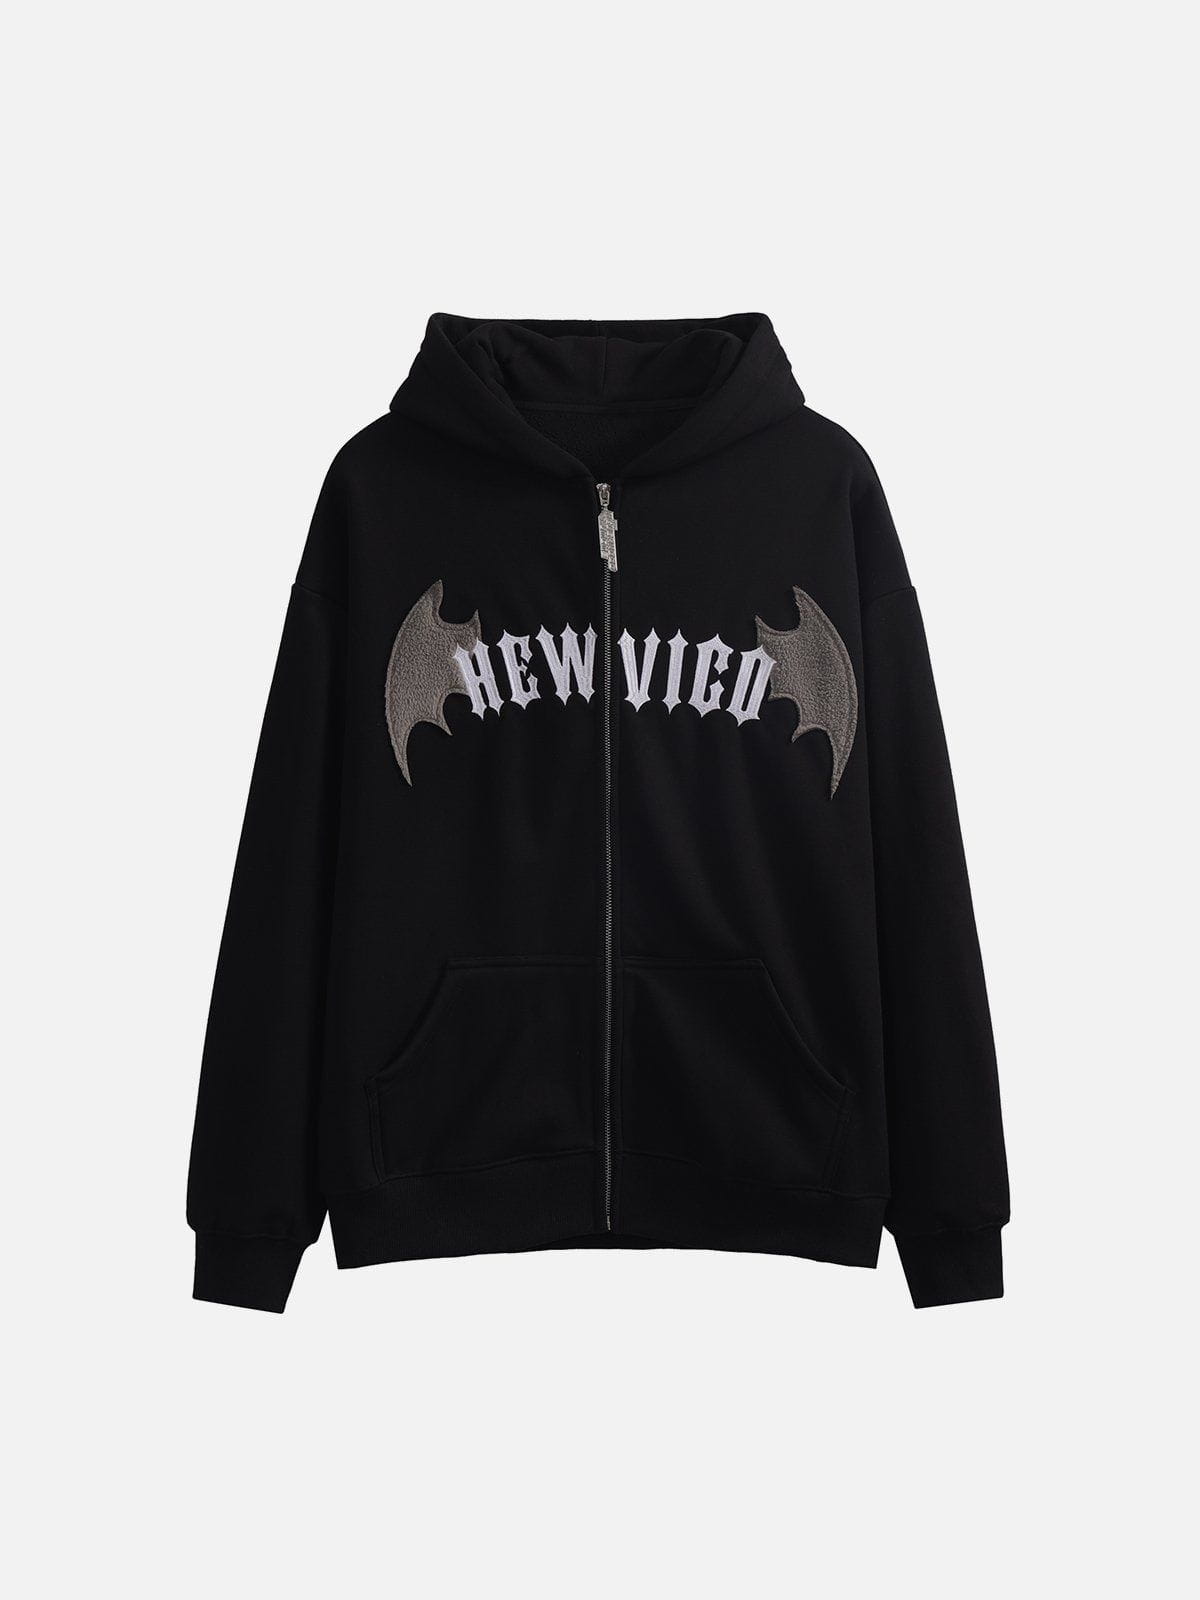 "Hew Vigo" Zip Up Hoodie Streetwear Brand Techwear Combat Tactical YUGEN THEORY